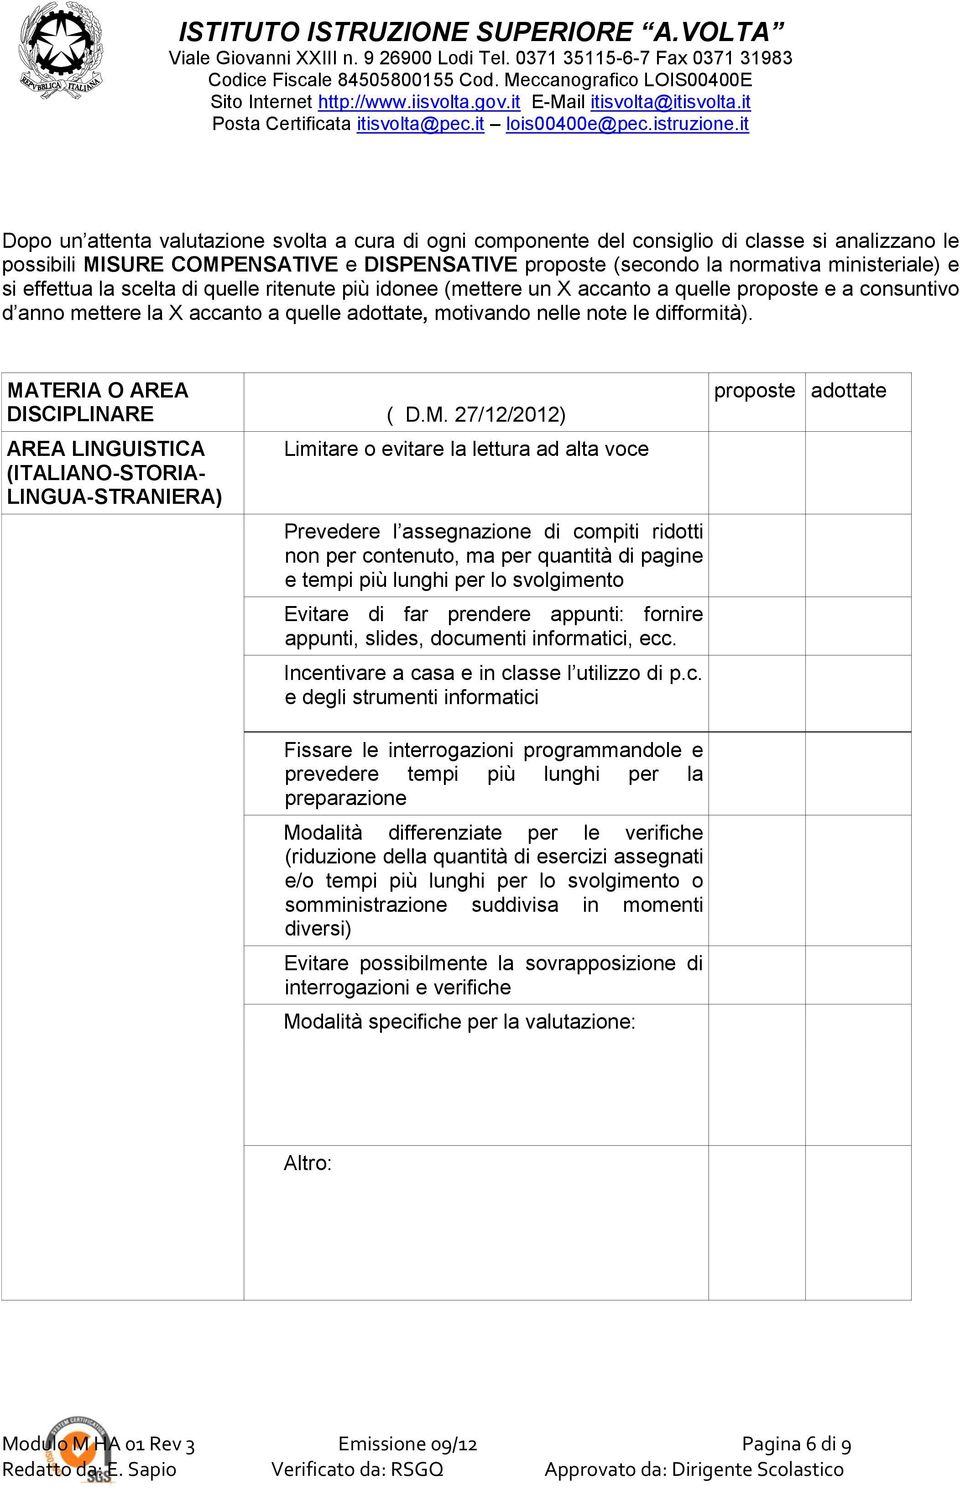 MATERIA O AREA DISCIPLINARE ( D.M. 27/12/2012) AREA LINGUISTICA (ITALIANO-STORIA- LINGUA-STRANIERA) Limitare o evitare la lettura ad alta voce Prevedere l assegnazione di compiti ridotti non per